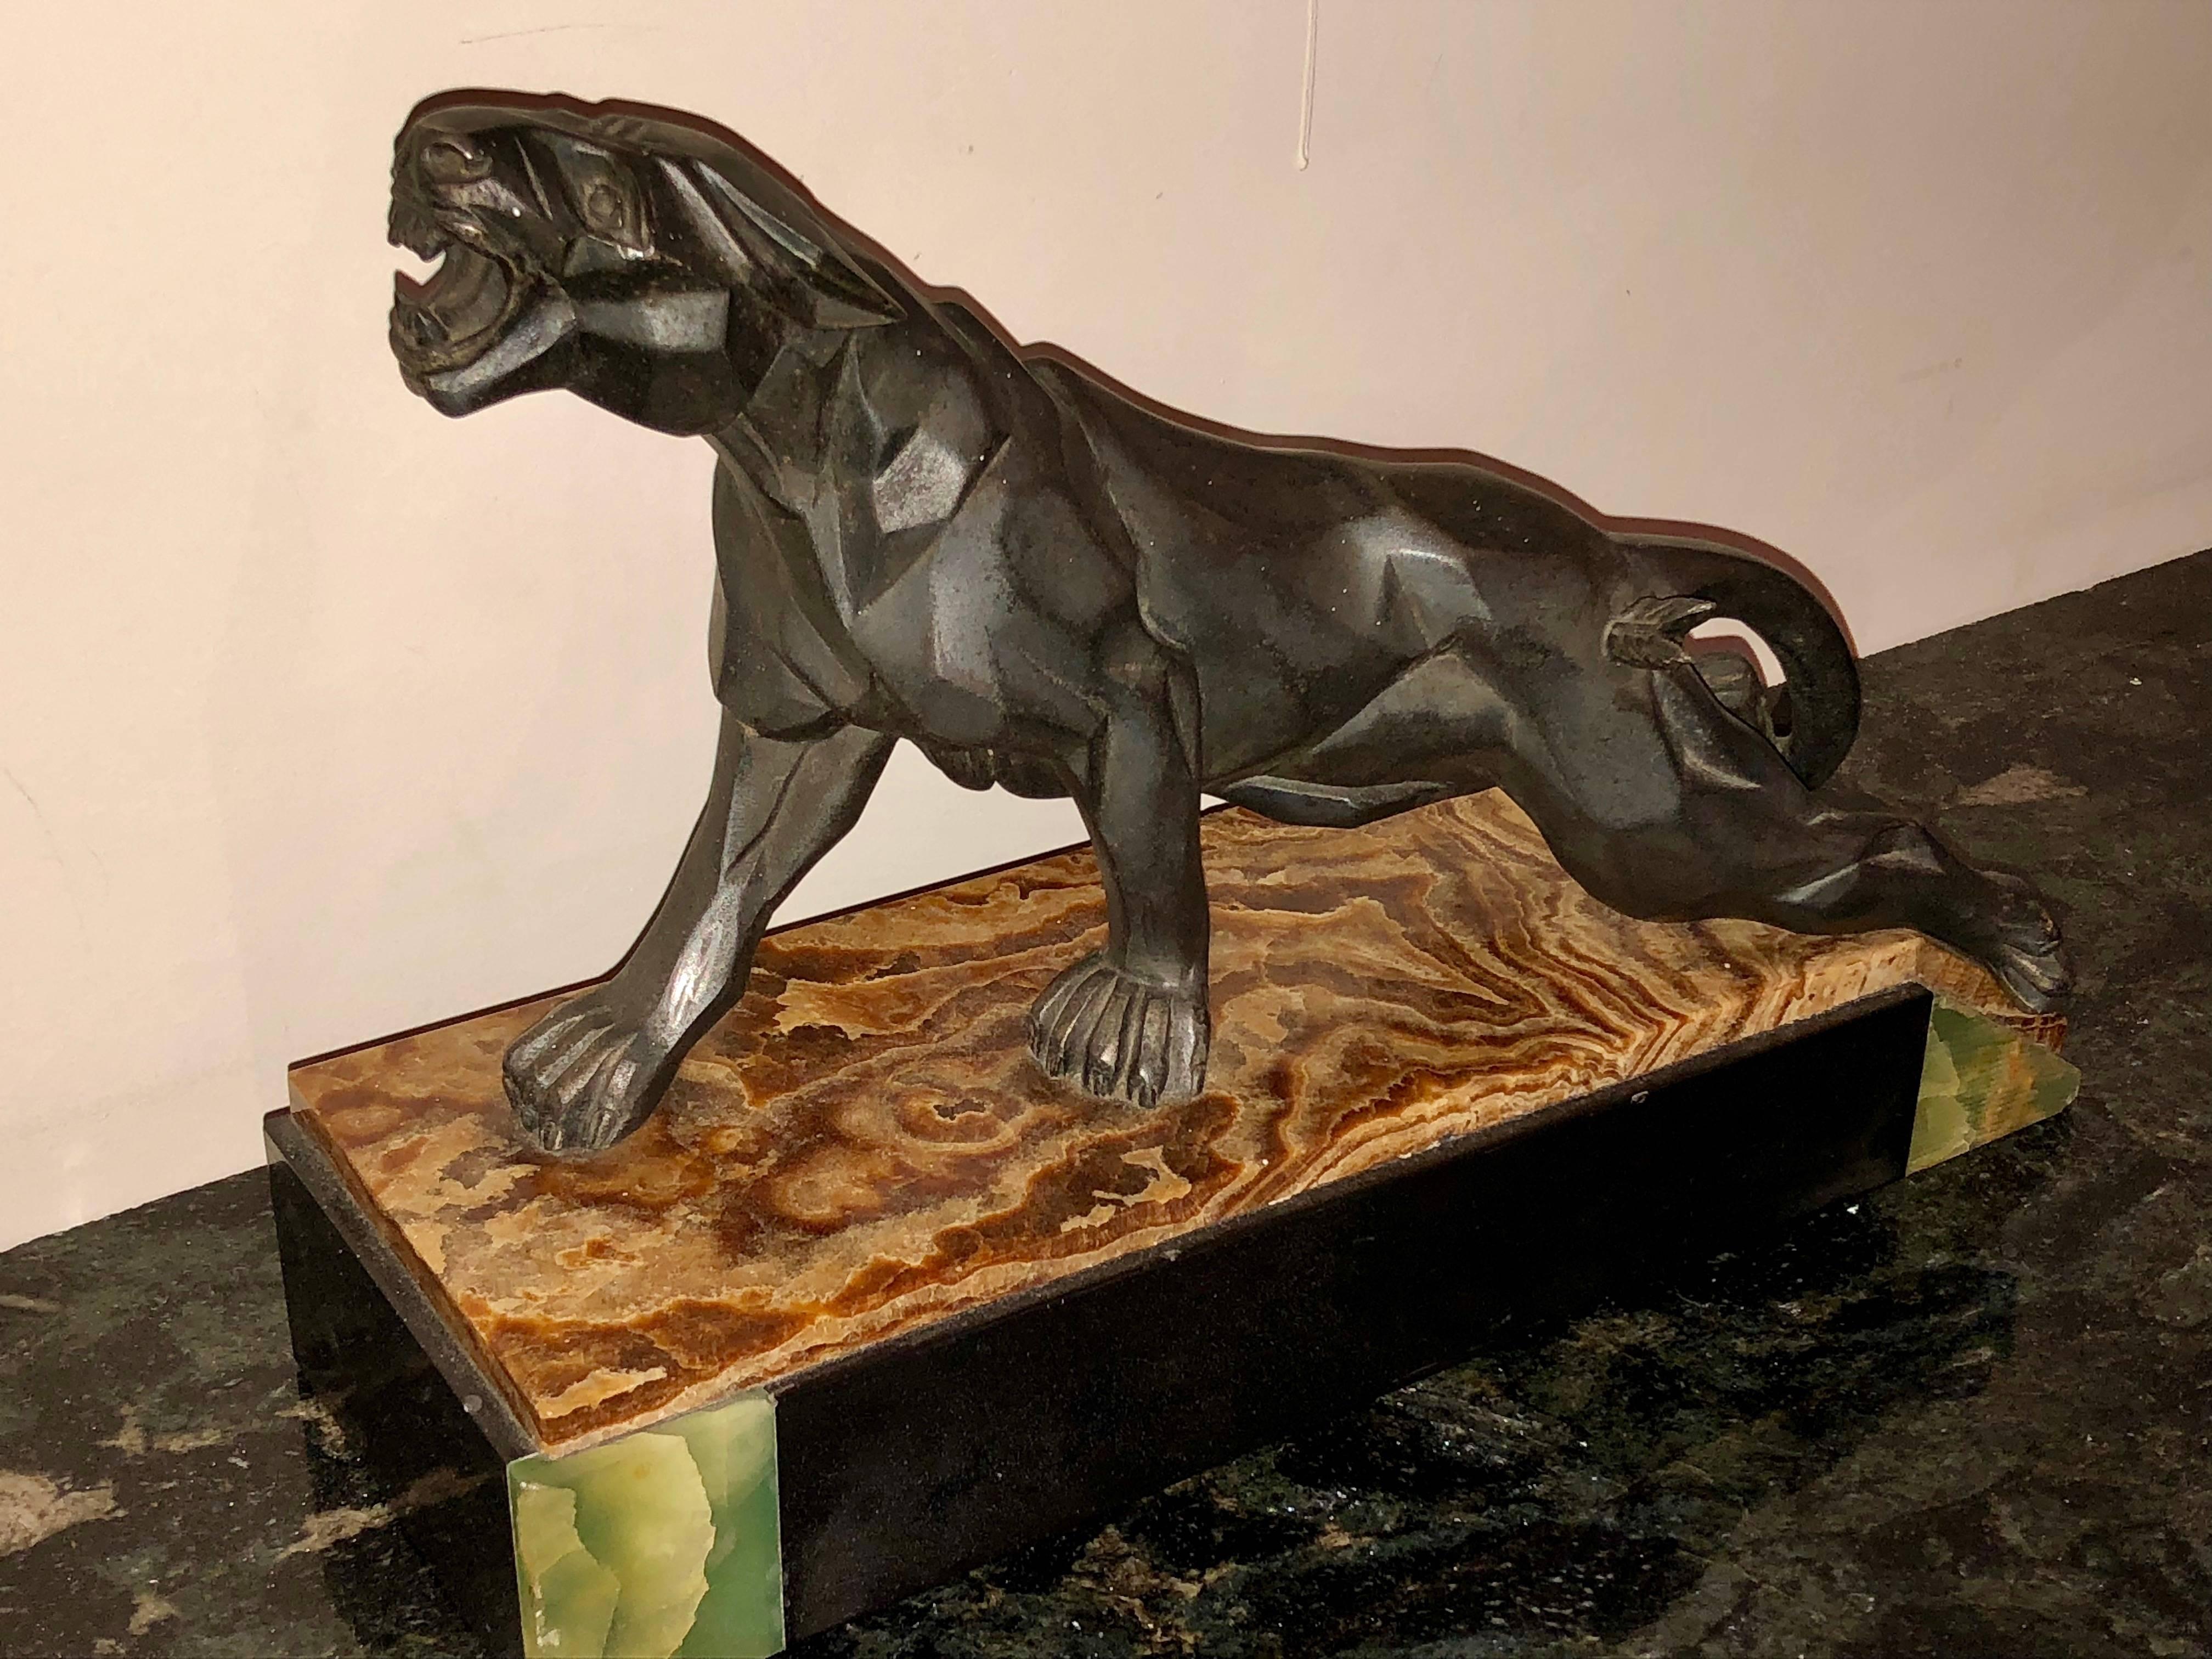 Kubistische Skulptur aus den 1930er Jahren mit einem kletternden und knurrenden Panther auf der Jagd. Das Art-Déco-Design mit den kunstvollen, facettenartigen Details ist fantasievoll und vermittelt ein Gefühl von Stärke, Kraft und Wildheit. Diese